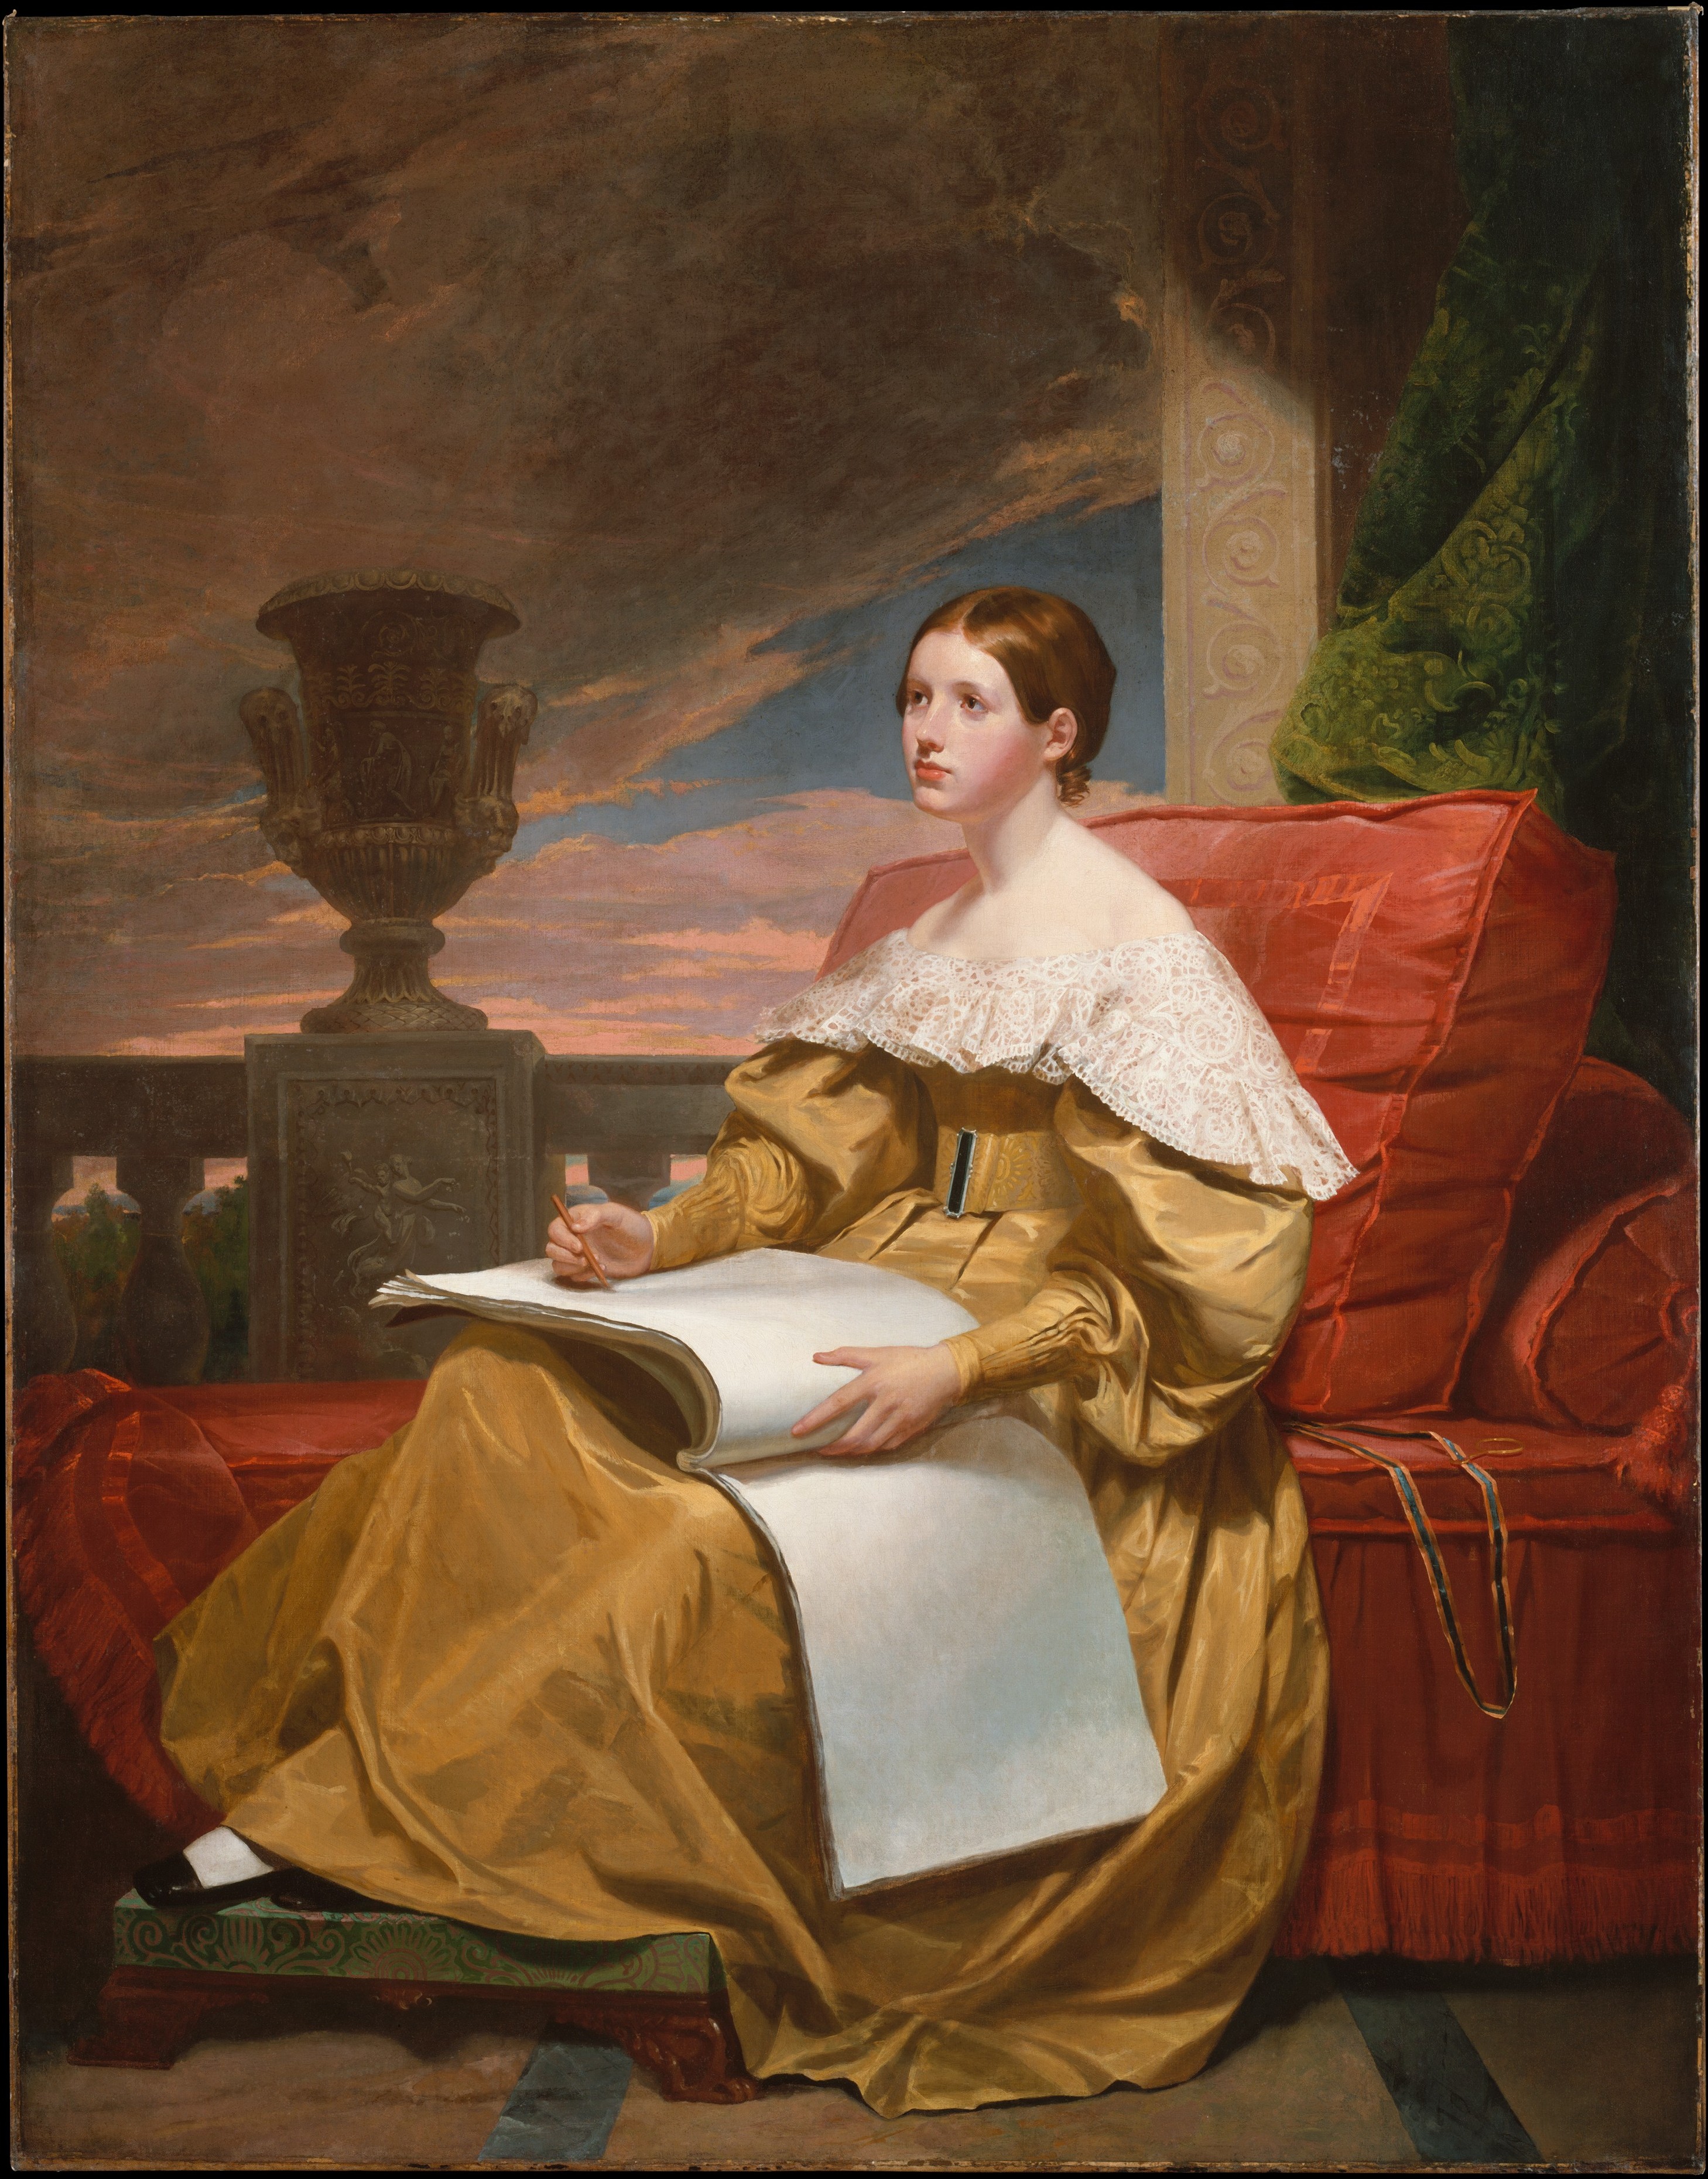 Susan Walker Morse (Die Muse) by Samuel F. B. Morse - c. 1836-37 - 187.3 x 146.4 cm Metropolitan Museum of Art